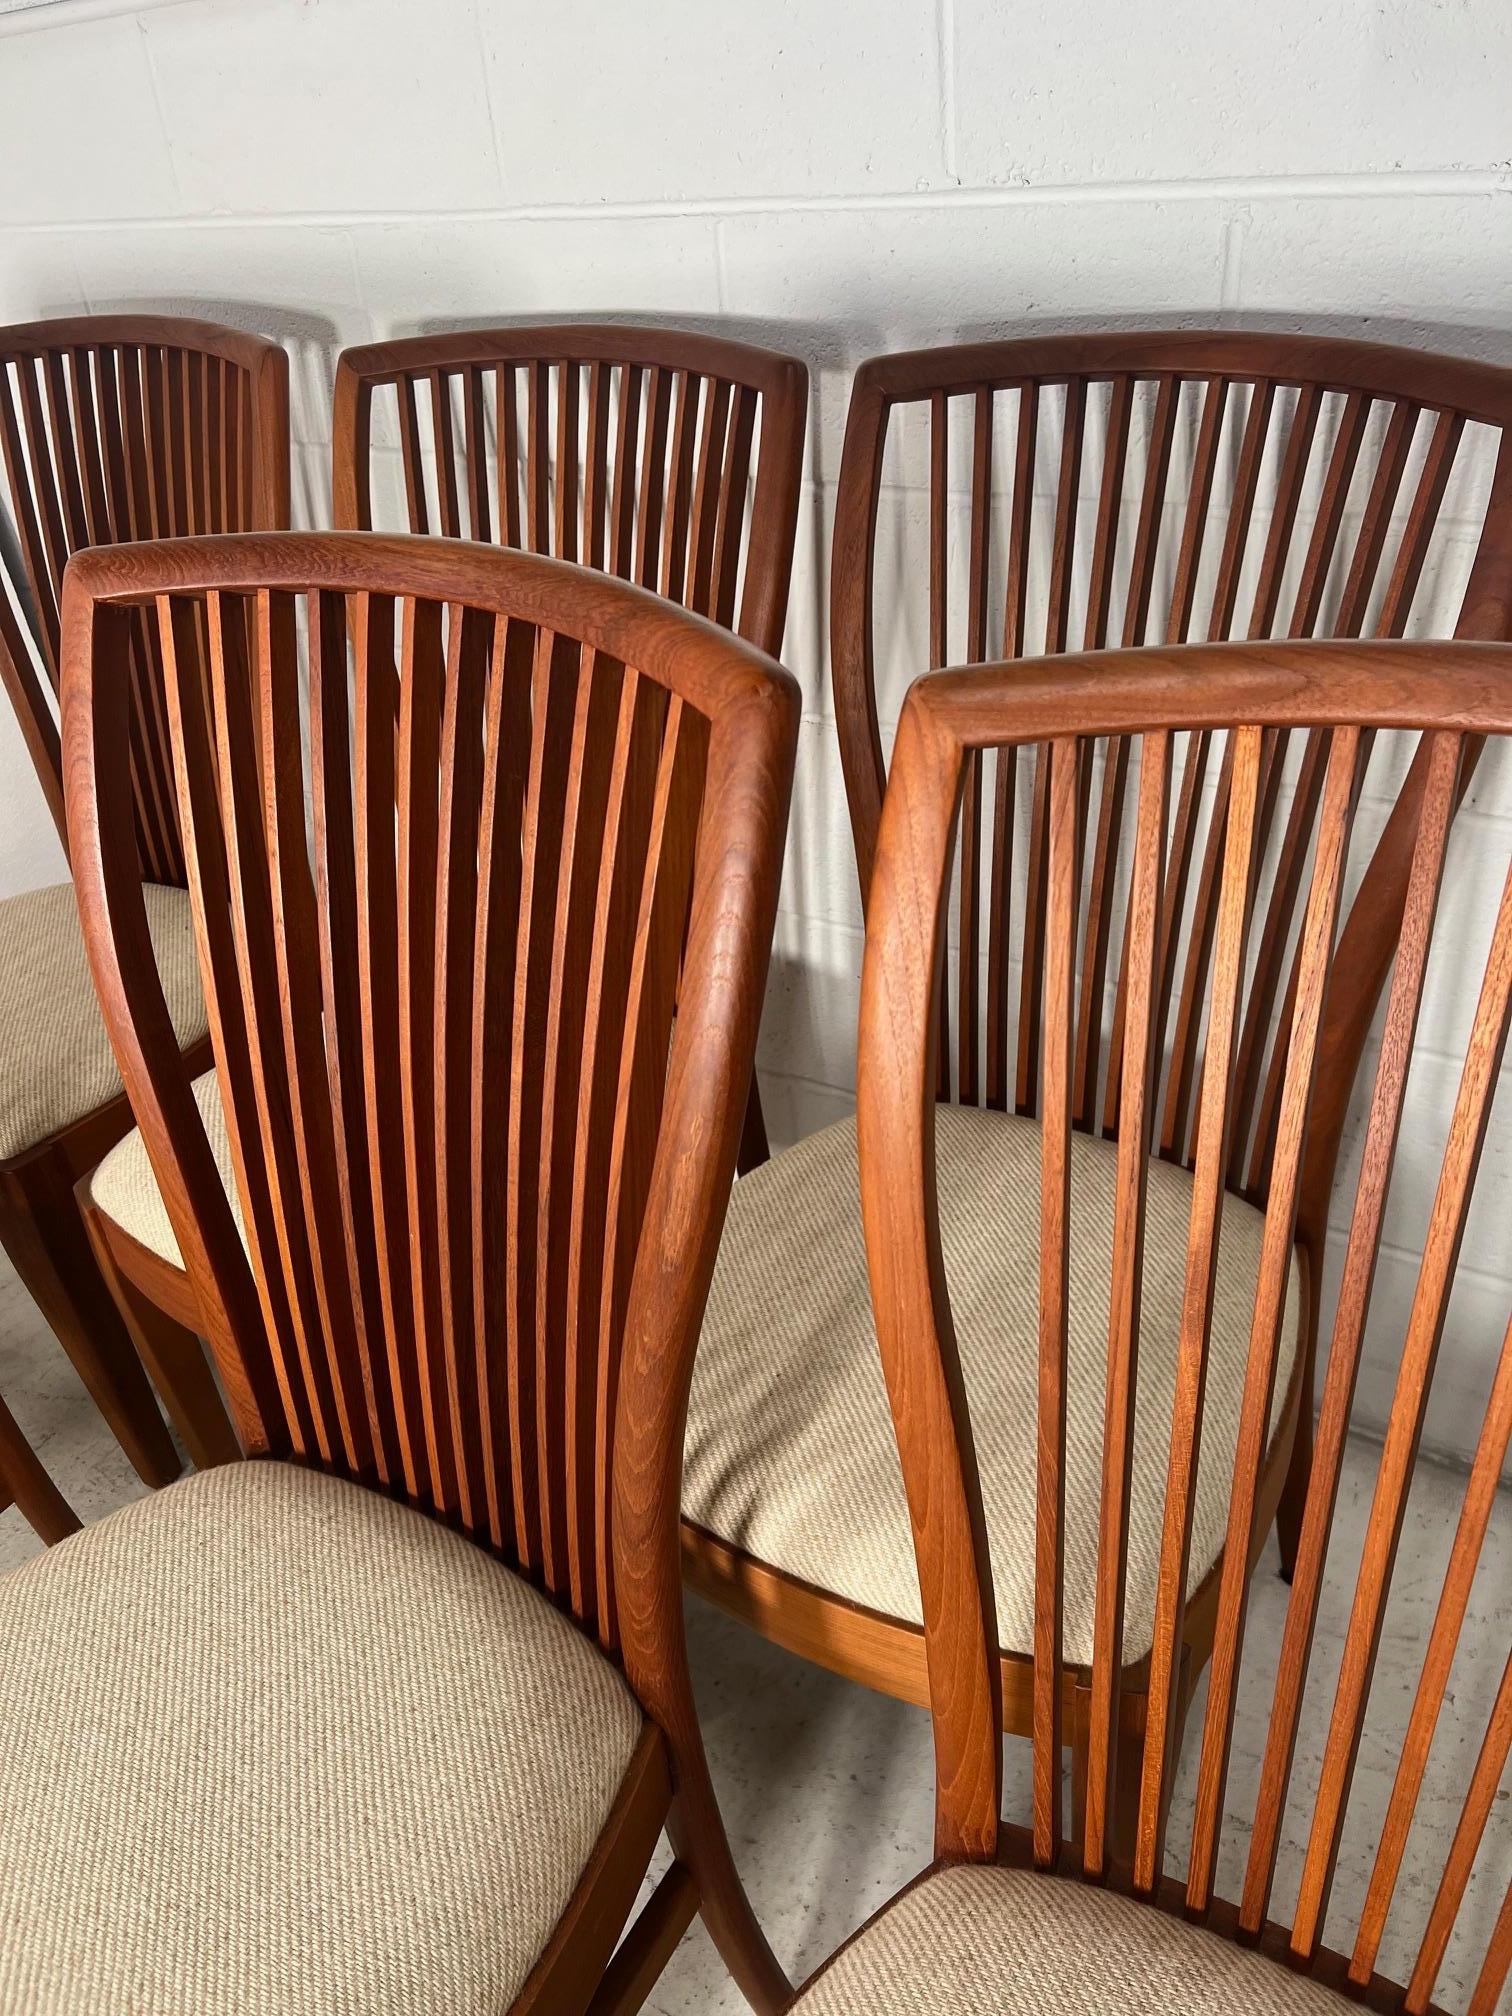 Ensemble de 6 chaises de salle à manger danoises en teck, modernes et du milieu du siècle, par Sun Cabinet.

Excellent état vintage. Quelques marques mineures sur les cadres.

Dimensions : L x D x H

18